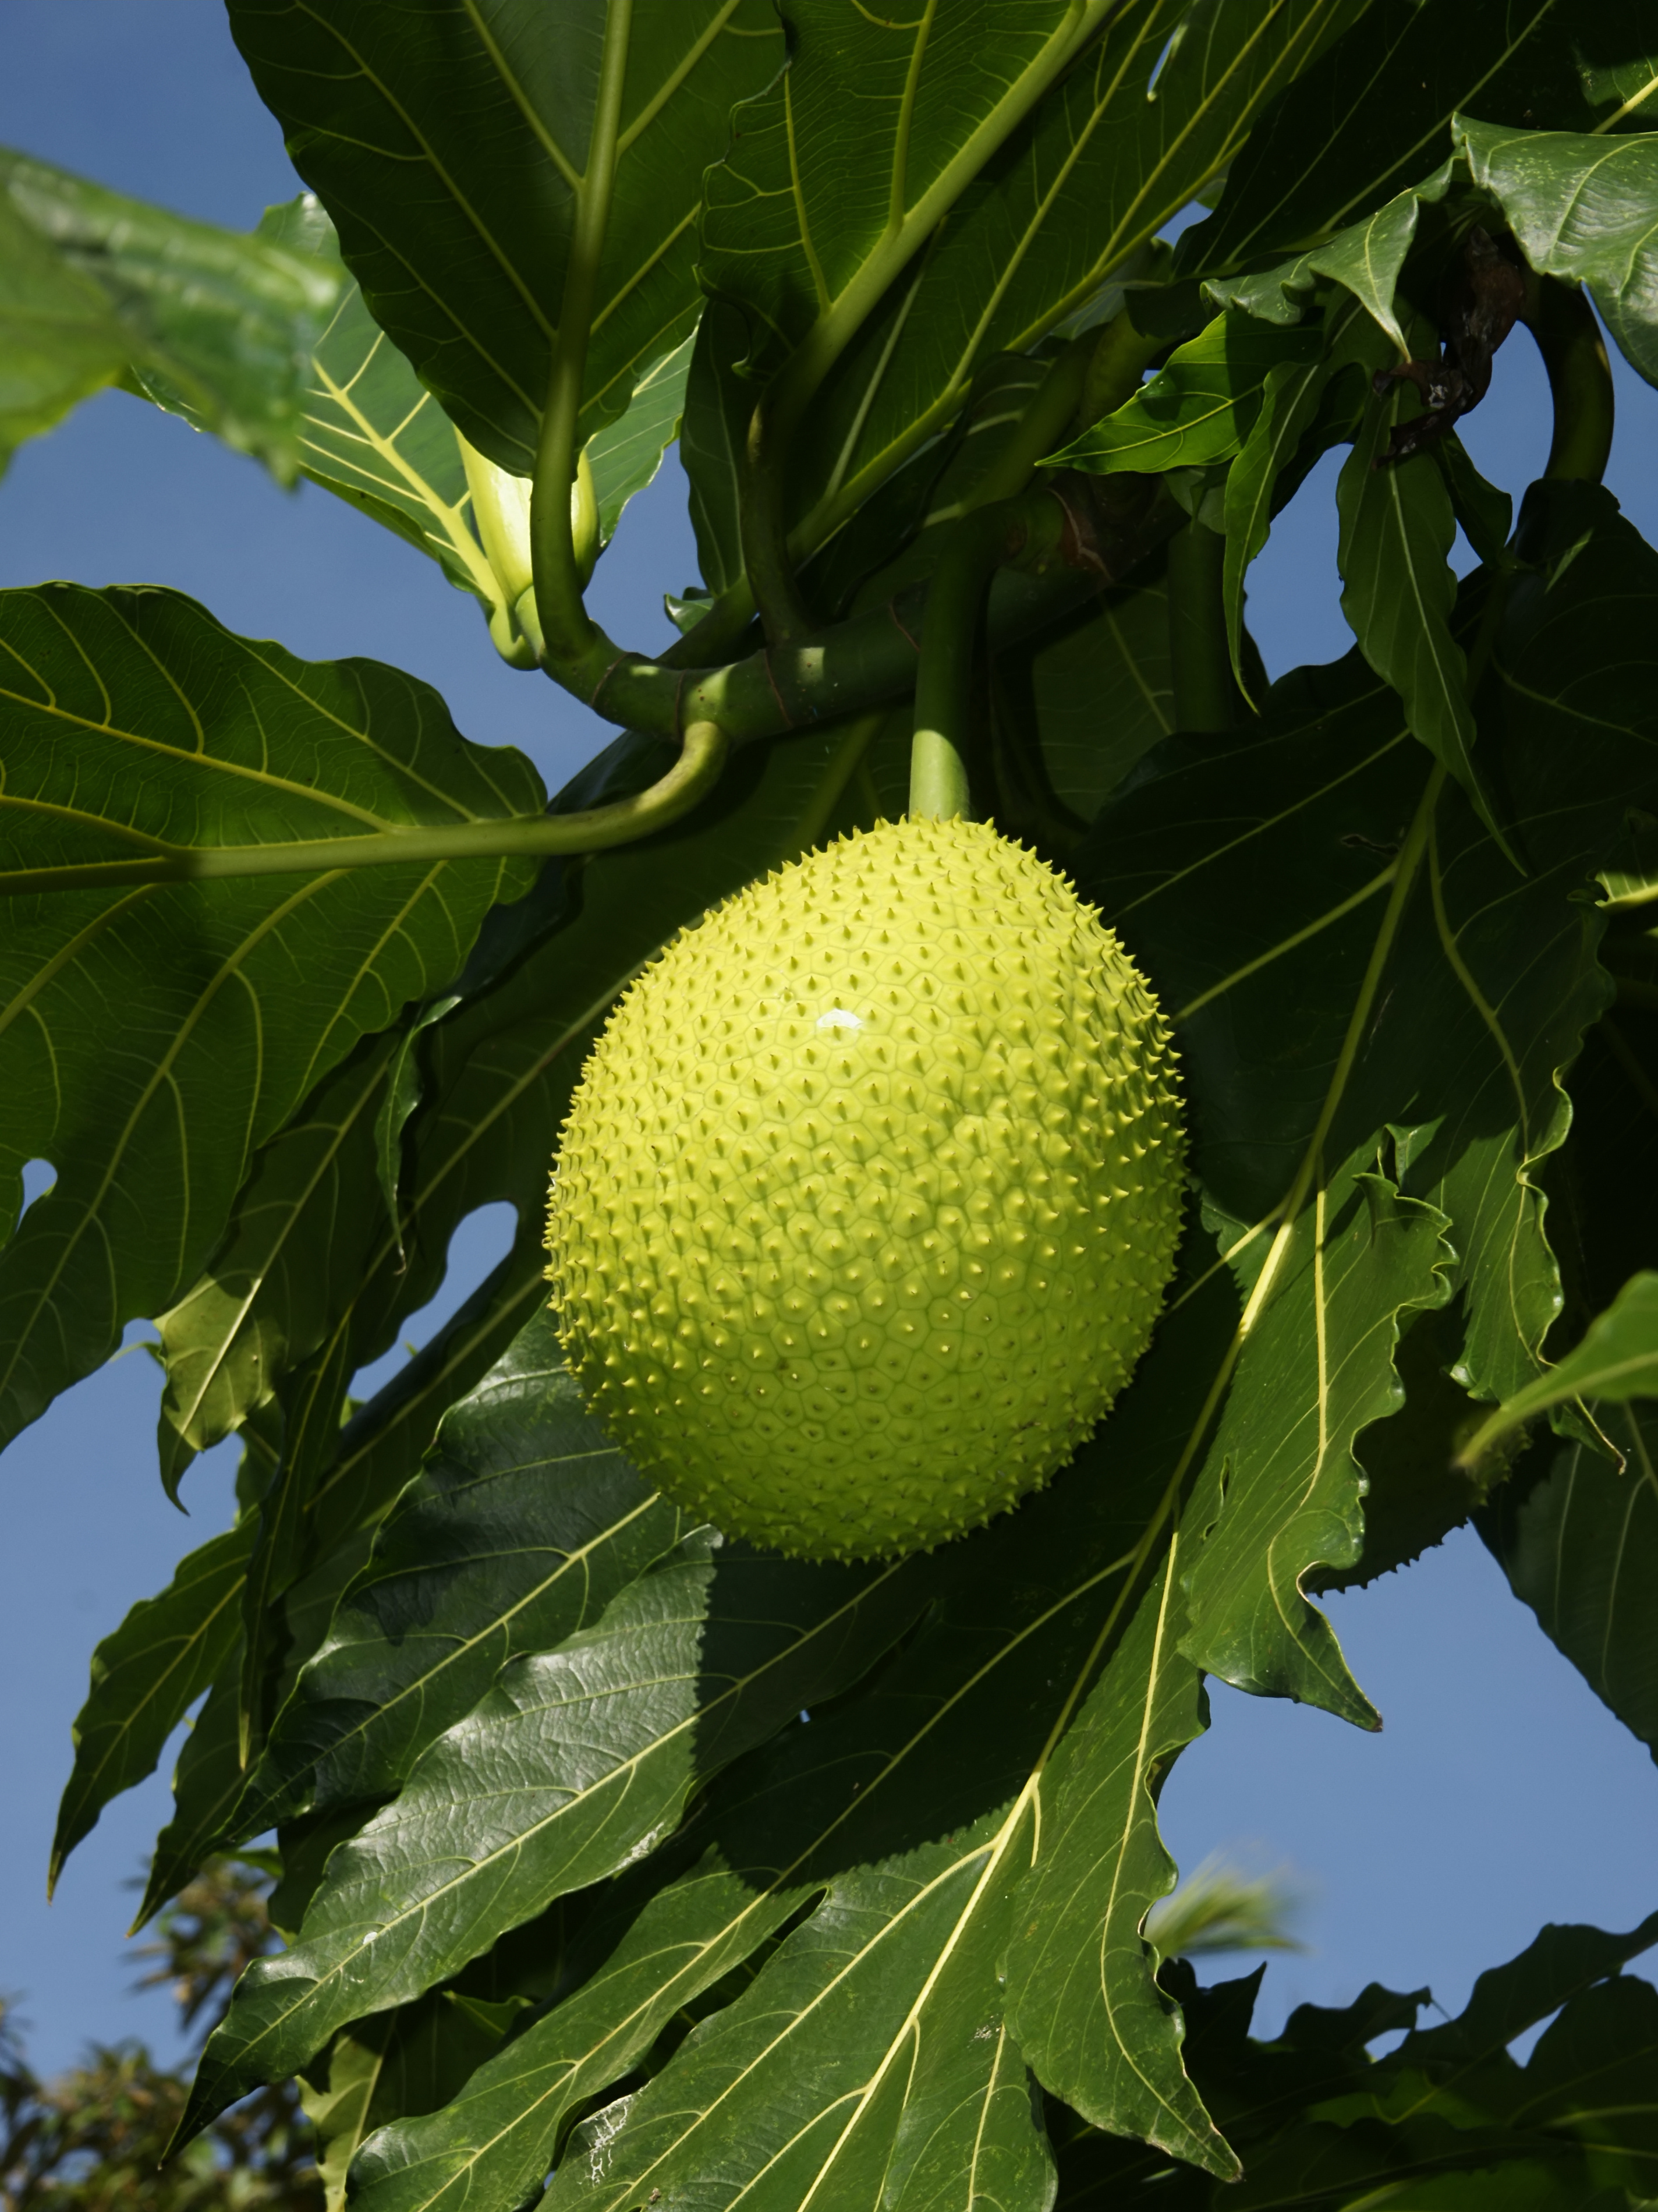 A breadfruit tree.